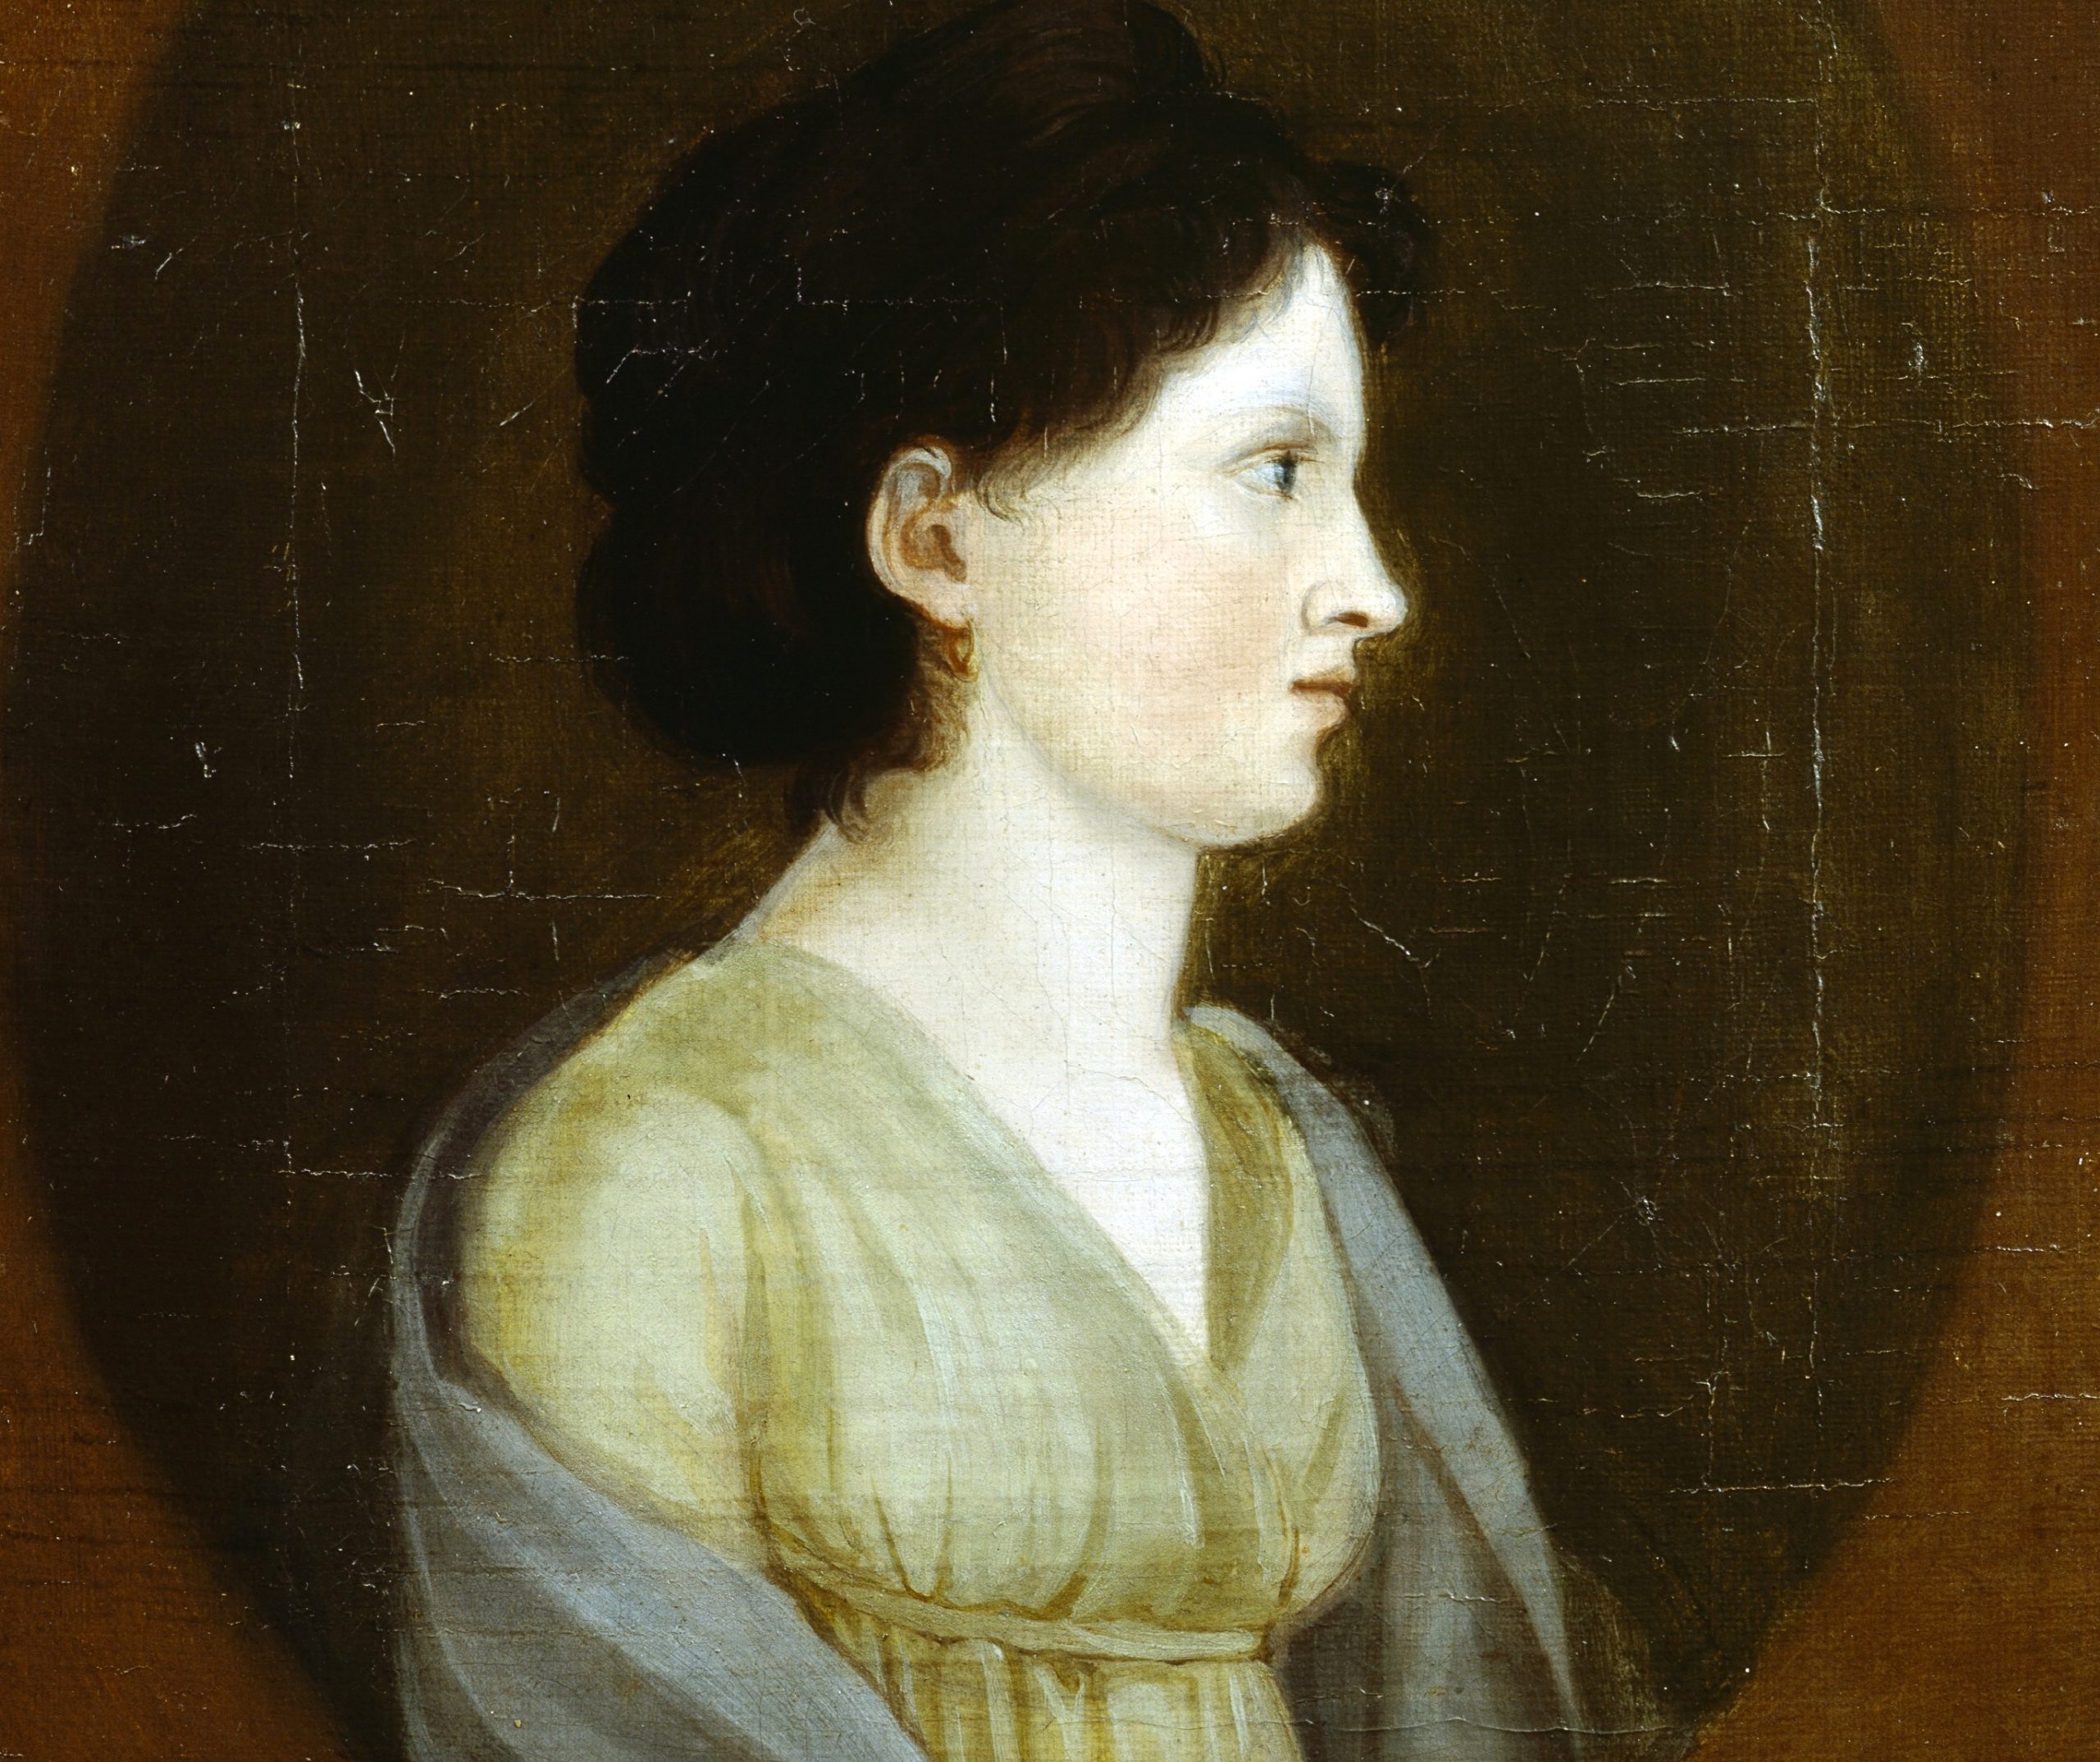 B1089, Karoline von Günderrode, Charlotte von Günderrode, Karoline von Günderrode (1780 - 1806), 1797